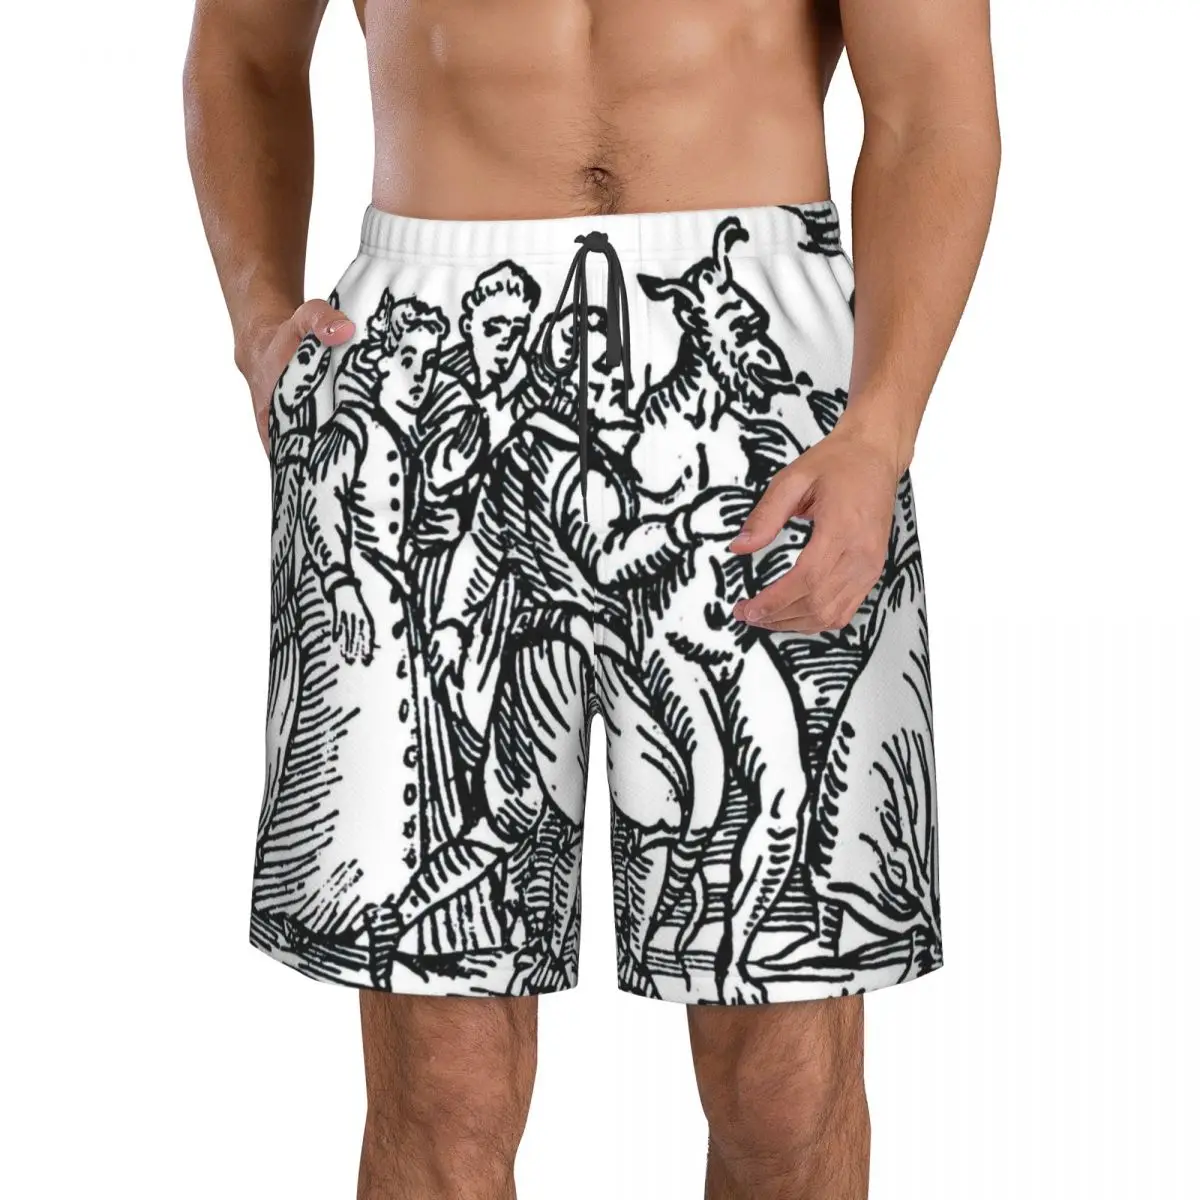 Мужские пляжные шорты Witches Dancing With The Devil, Быстросохнущий купальник для фитнеса, Забавные уличные забавные 3D-шорты